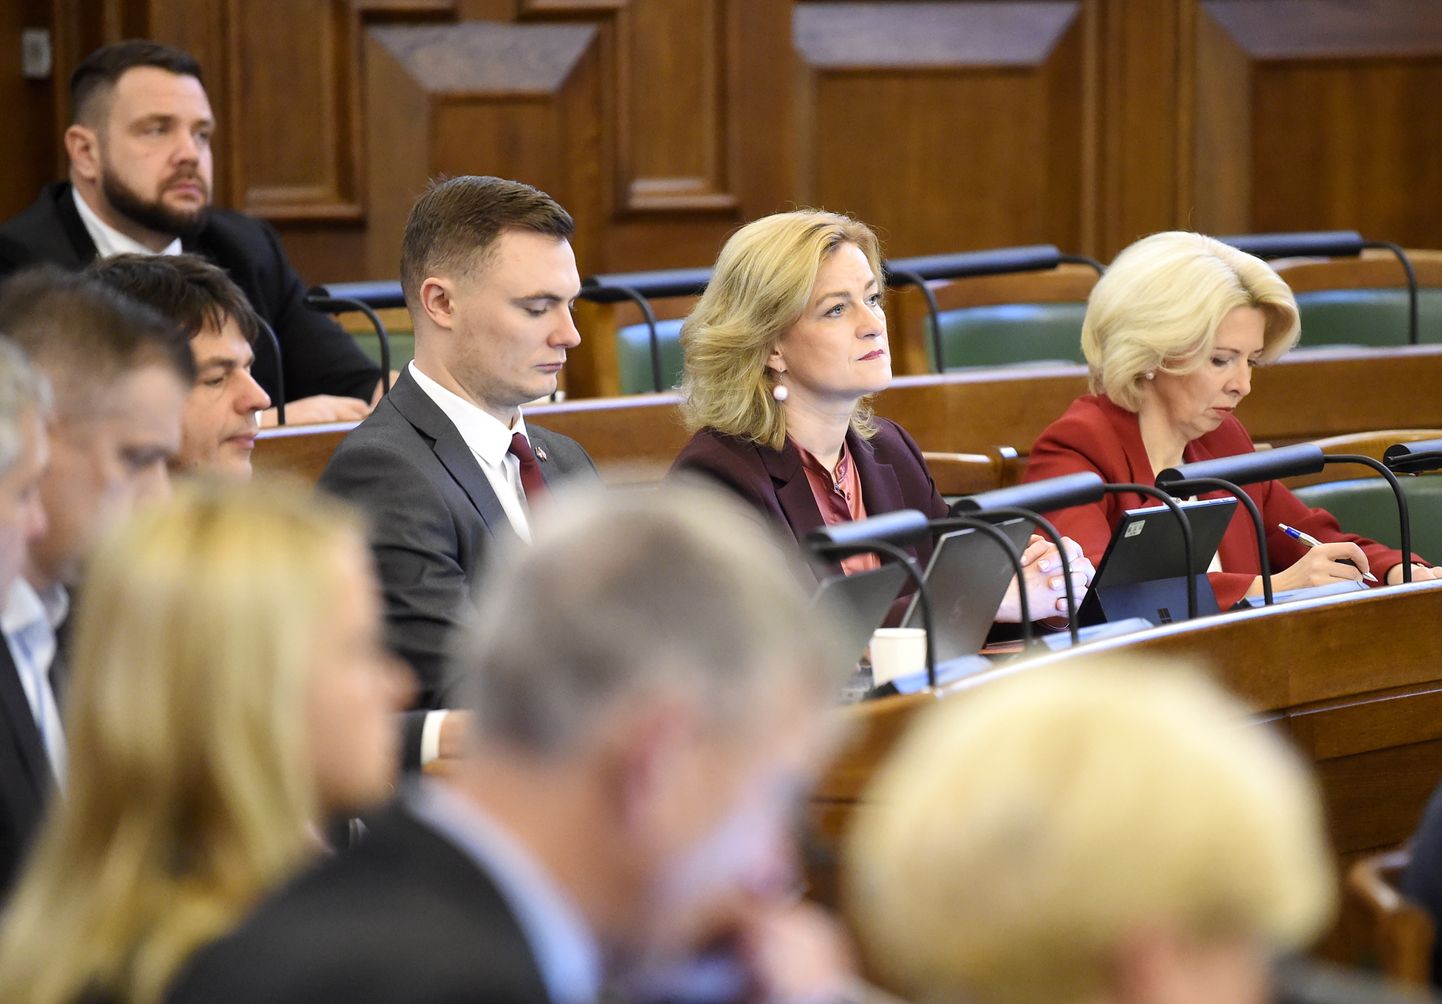 Aizsardzības minisrtra amata kandidāte Ināra Mūrniece (no labās), ekonomikas ministra amata kandidāte Ilze Indriksone un Saeimas deputāts Artūrs Butāns Saeimas ārkārtas sēdē, kurā paredzēts balsojums par uzticības izteikšanu Krišjāņa Kariņa izveidotajam Ministru kabinetam.